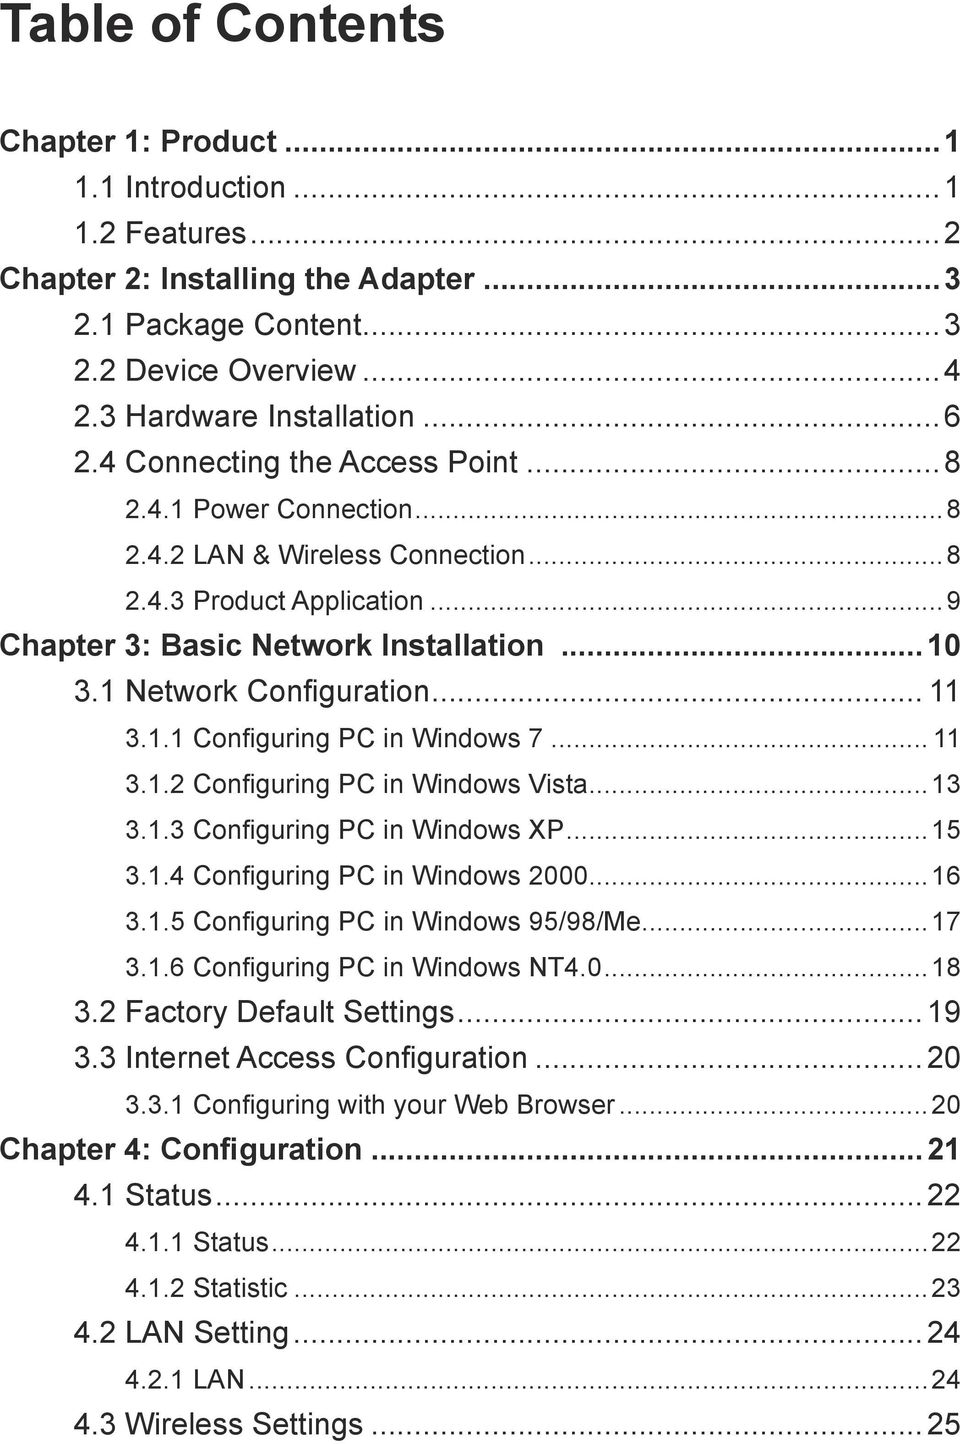 .. 11 3.1.1 Configuring PC in Windows 7... 11 3.1.2 Configuring PC in Windows Vista...13 3.1.3 Configuring PC in Windows XP...15 3.1.4 Configuring PC in Windows 2000...16 3.1.5 Configuring PC in Windows 95/98/Me.